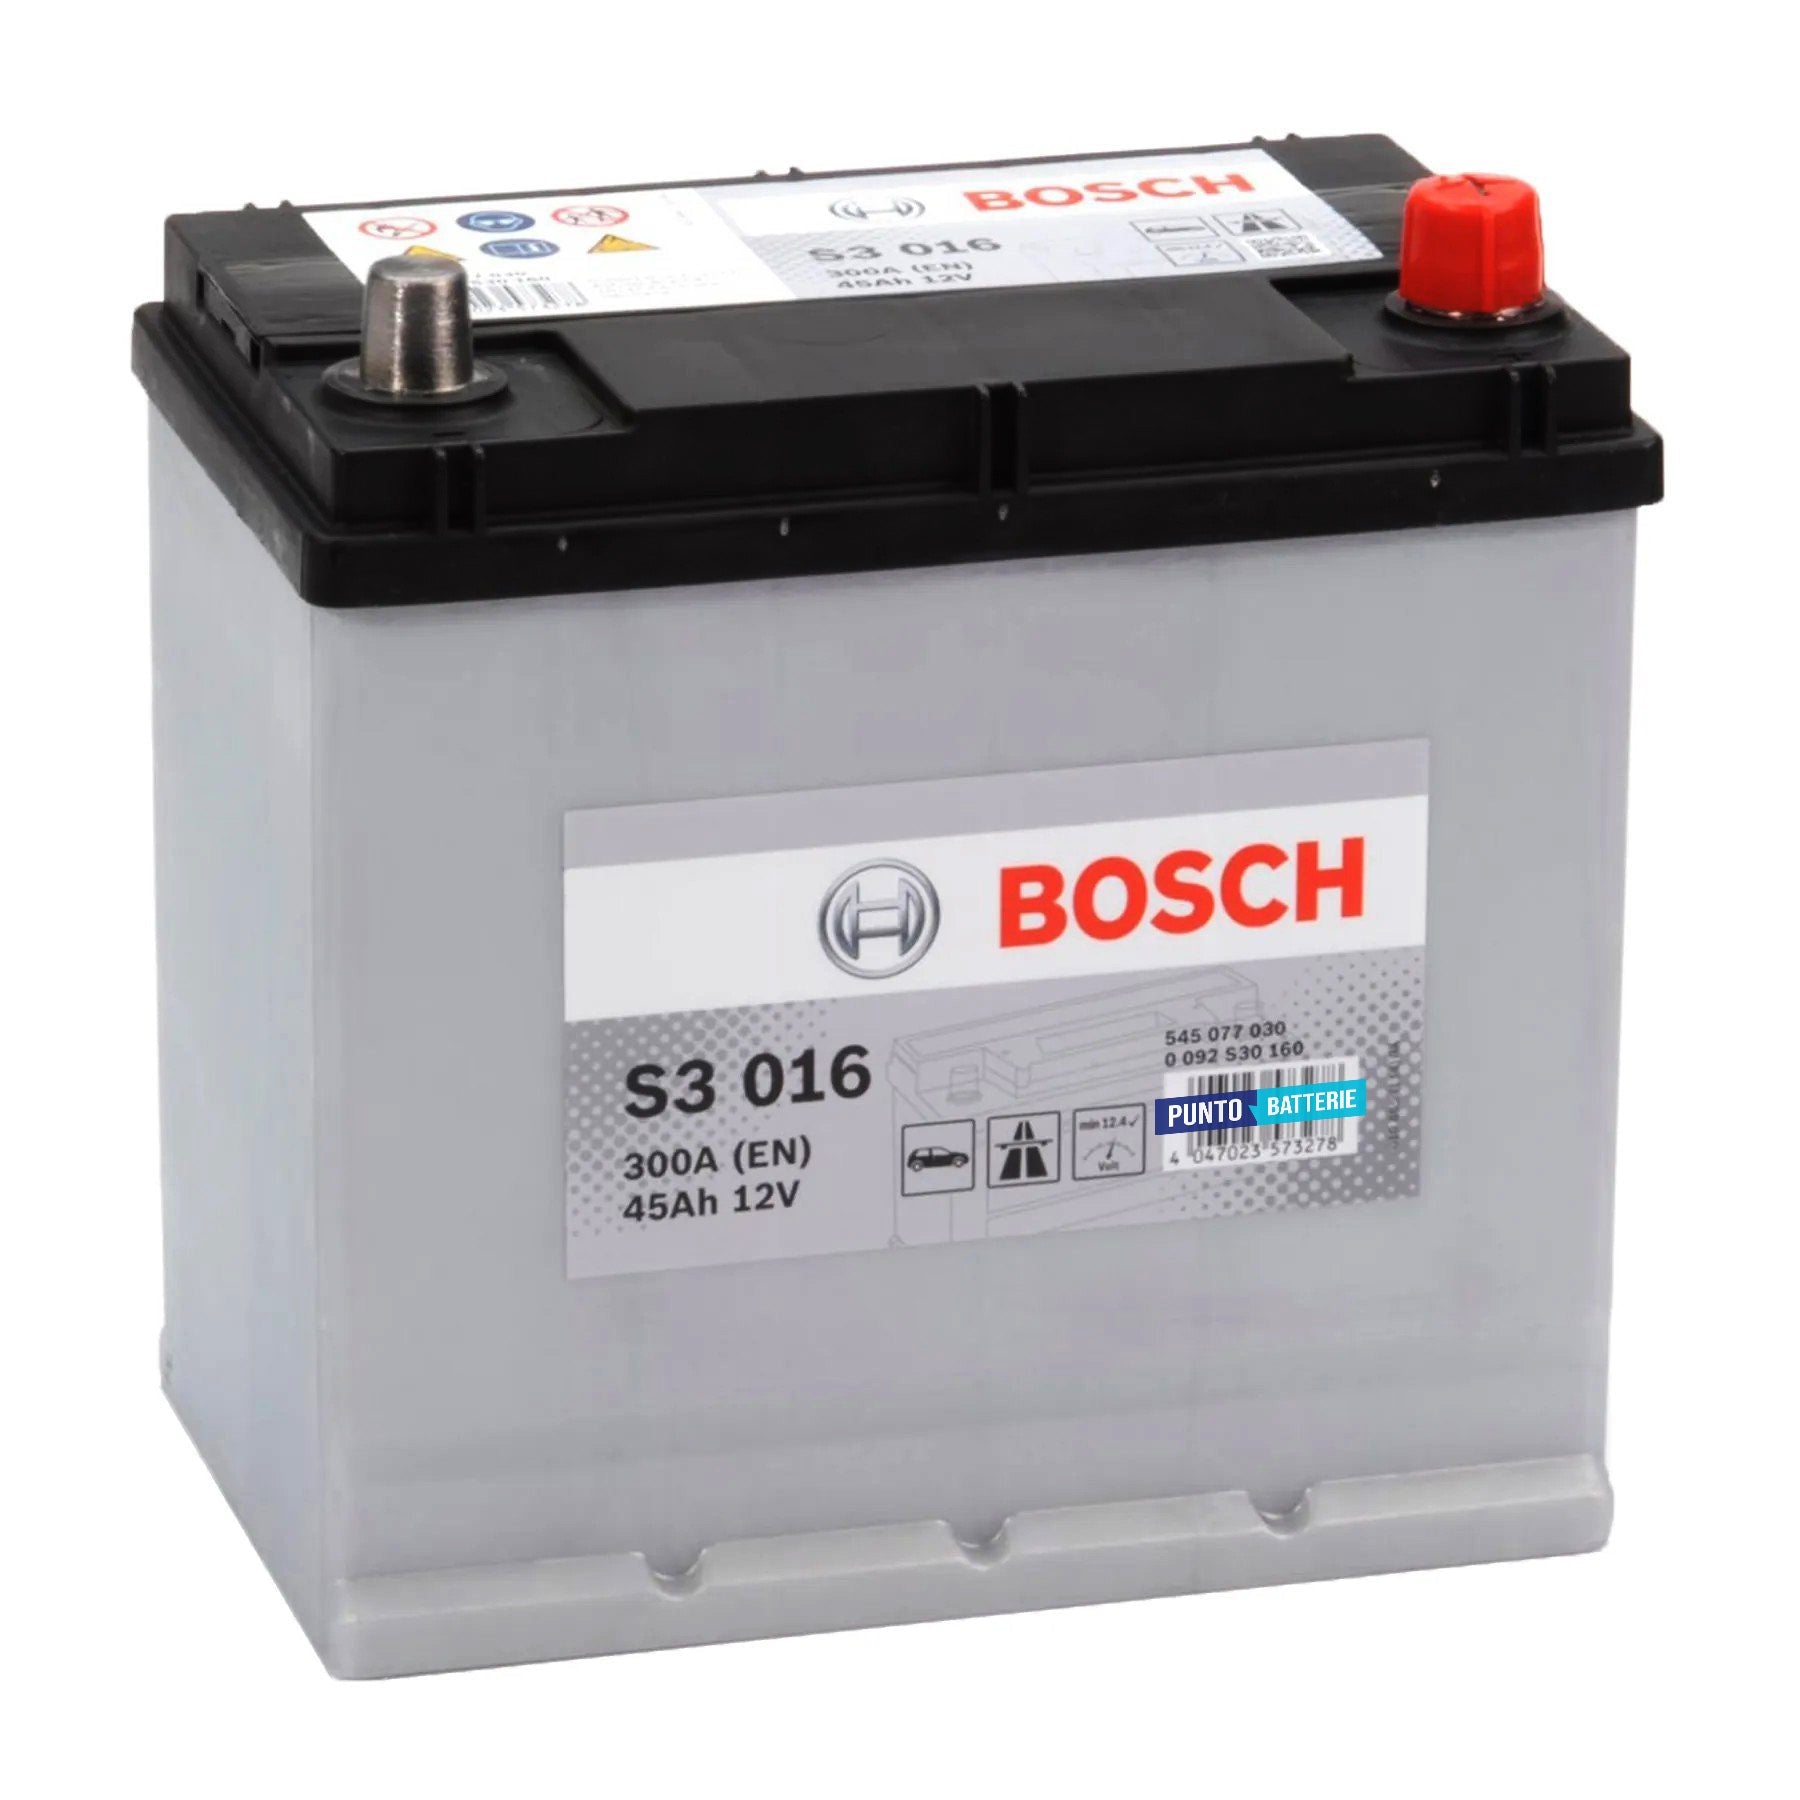 Batteria originale Bosch S3 S3 016, dimensioni 220 x 135 x 225, polo positivo a destra, 12 volt, 45 amperora, 300 ampere. Batteria per auto e veicoli leggeri.